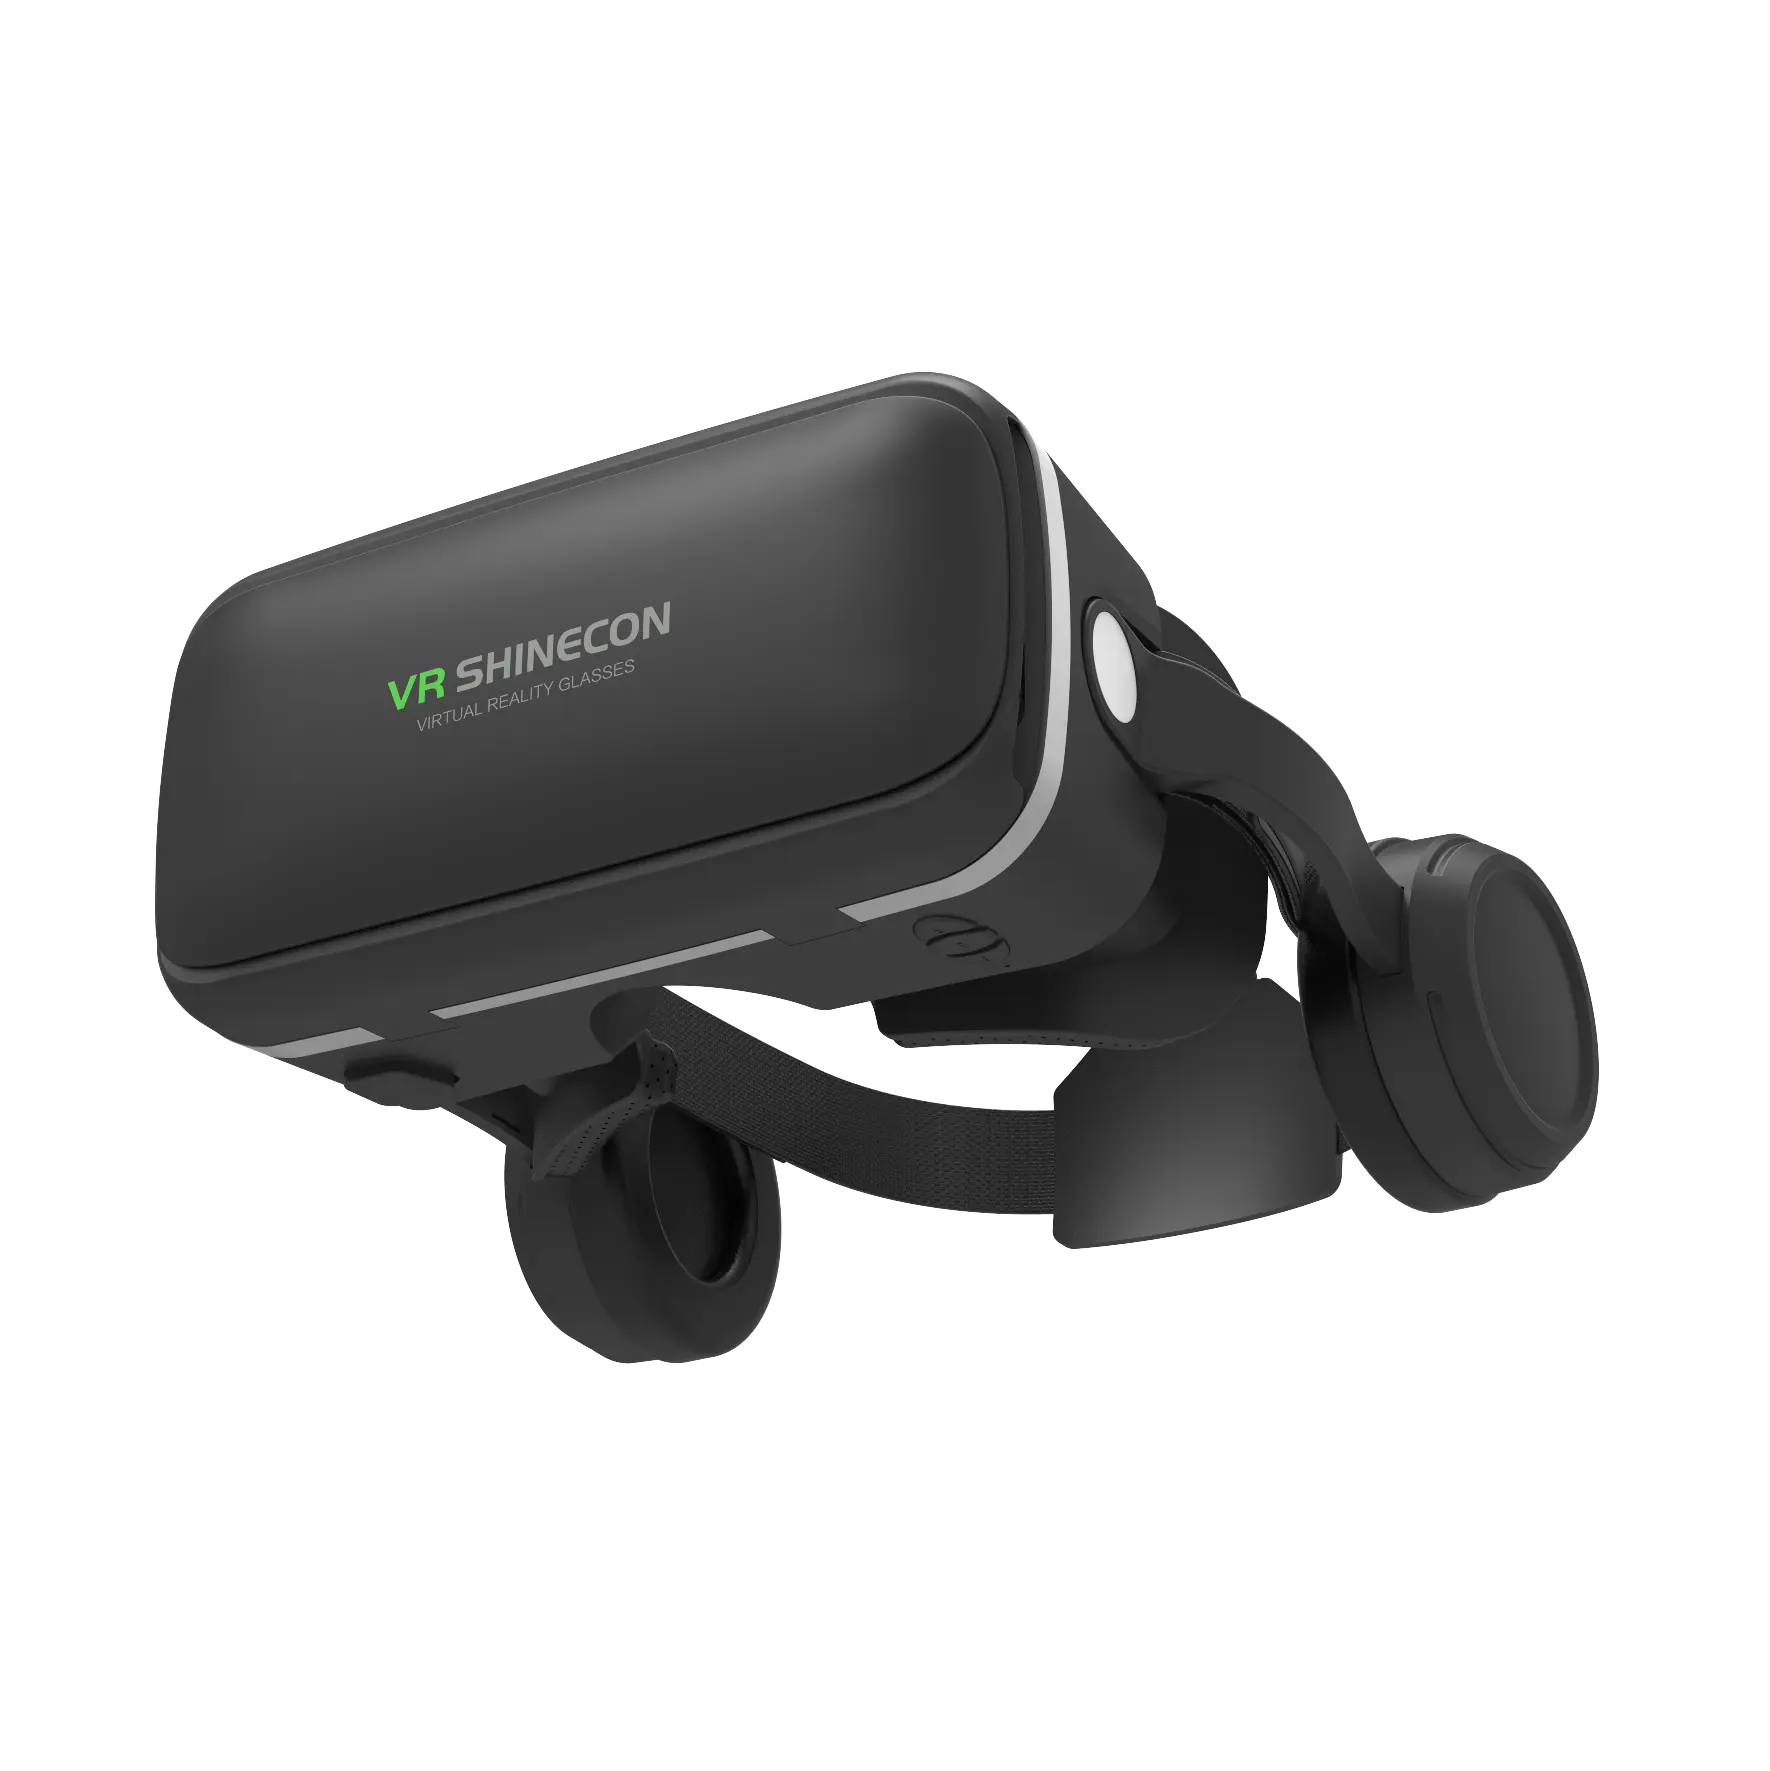 نظارات الواقع الافتراضي, توفر العدسات شبه الكروية صورة أكثر دقة HD نظارات الواقع الافتراضي ثلاثية الأبعاد مع سماعة الرأس نظارات الواقع الافتراضي ثلاثية الأبعاد عالية الجودة